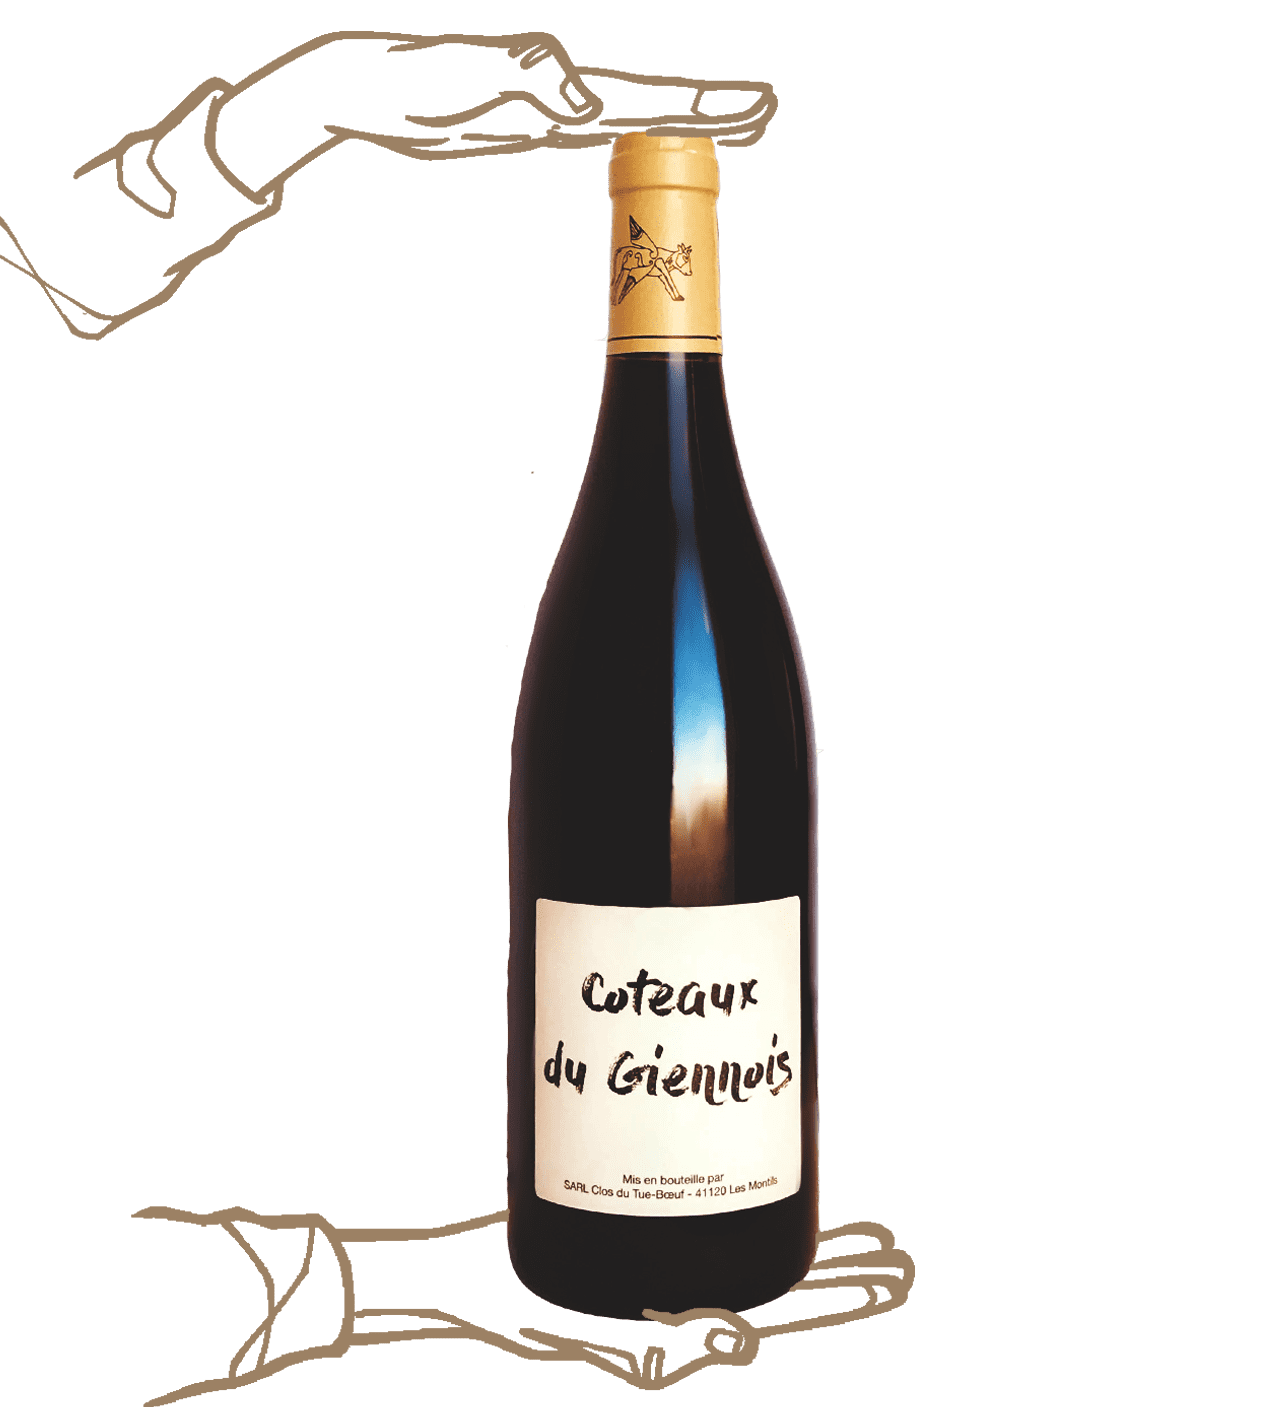 Coteaux de giennois by Clos du tue boeuf is a natural wine from Loire